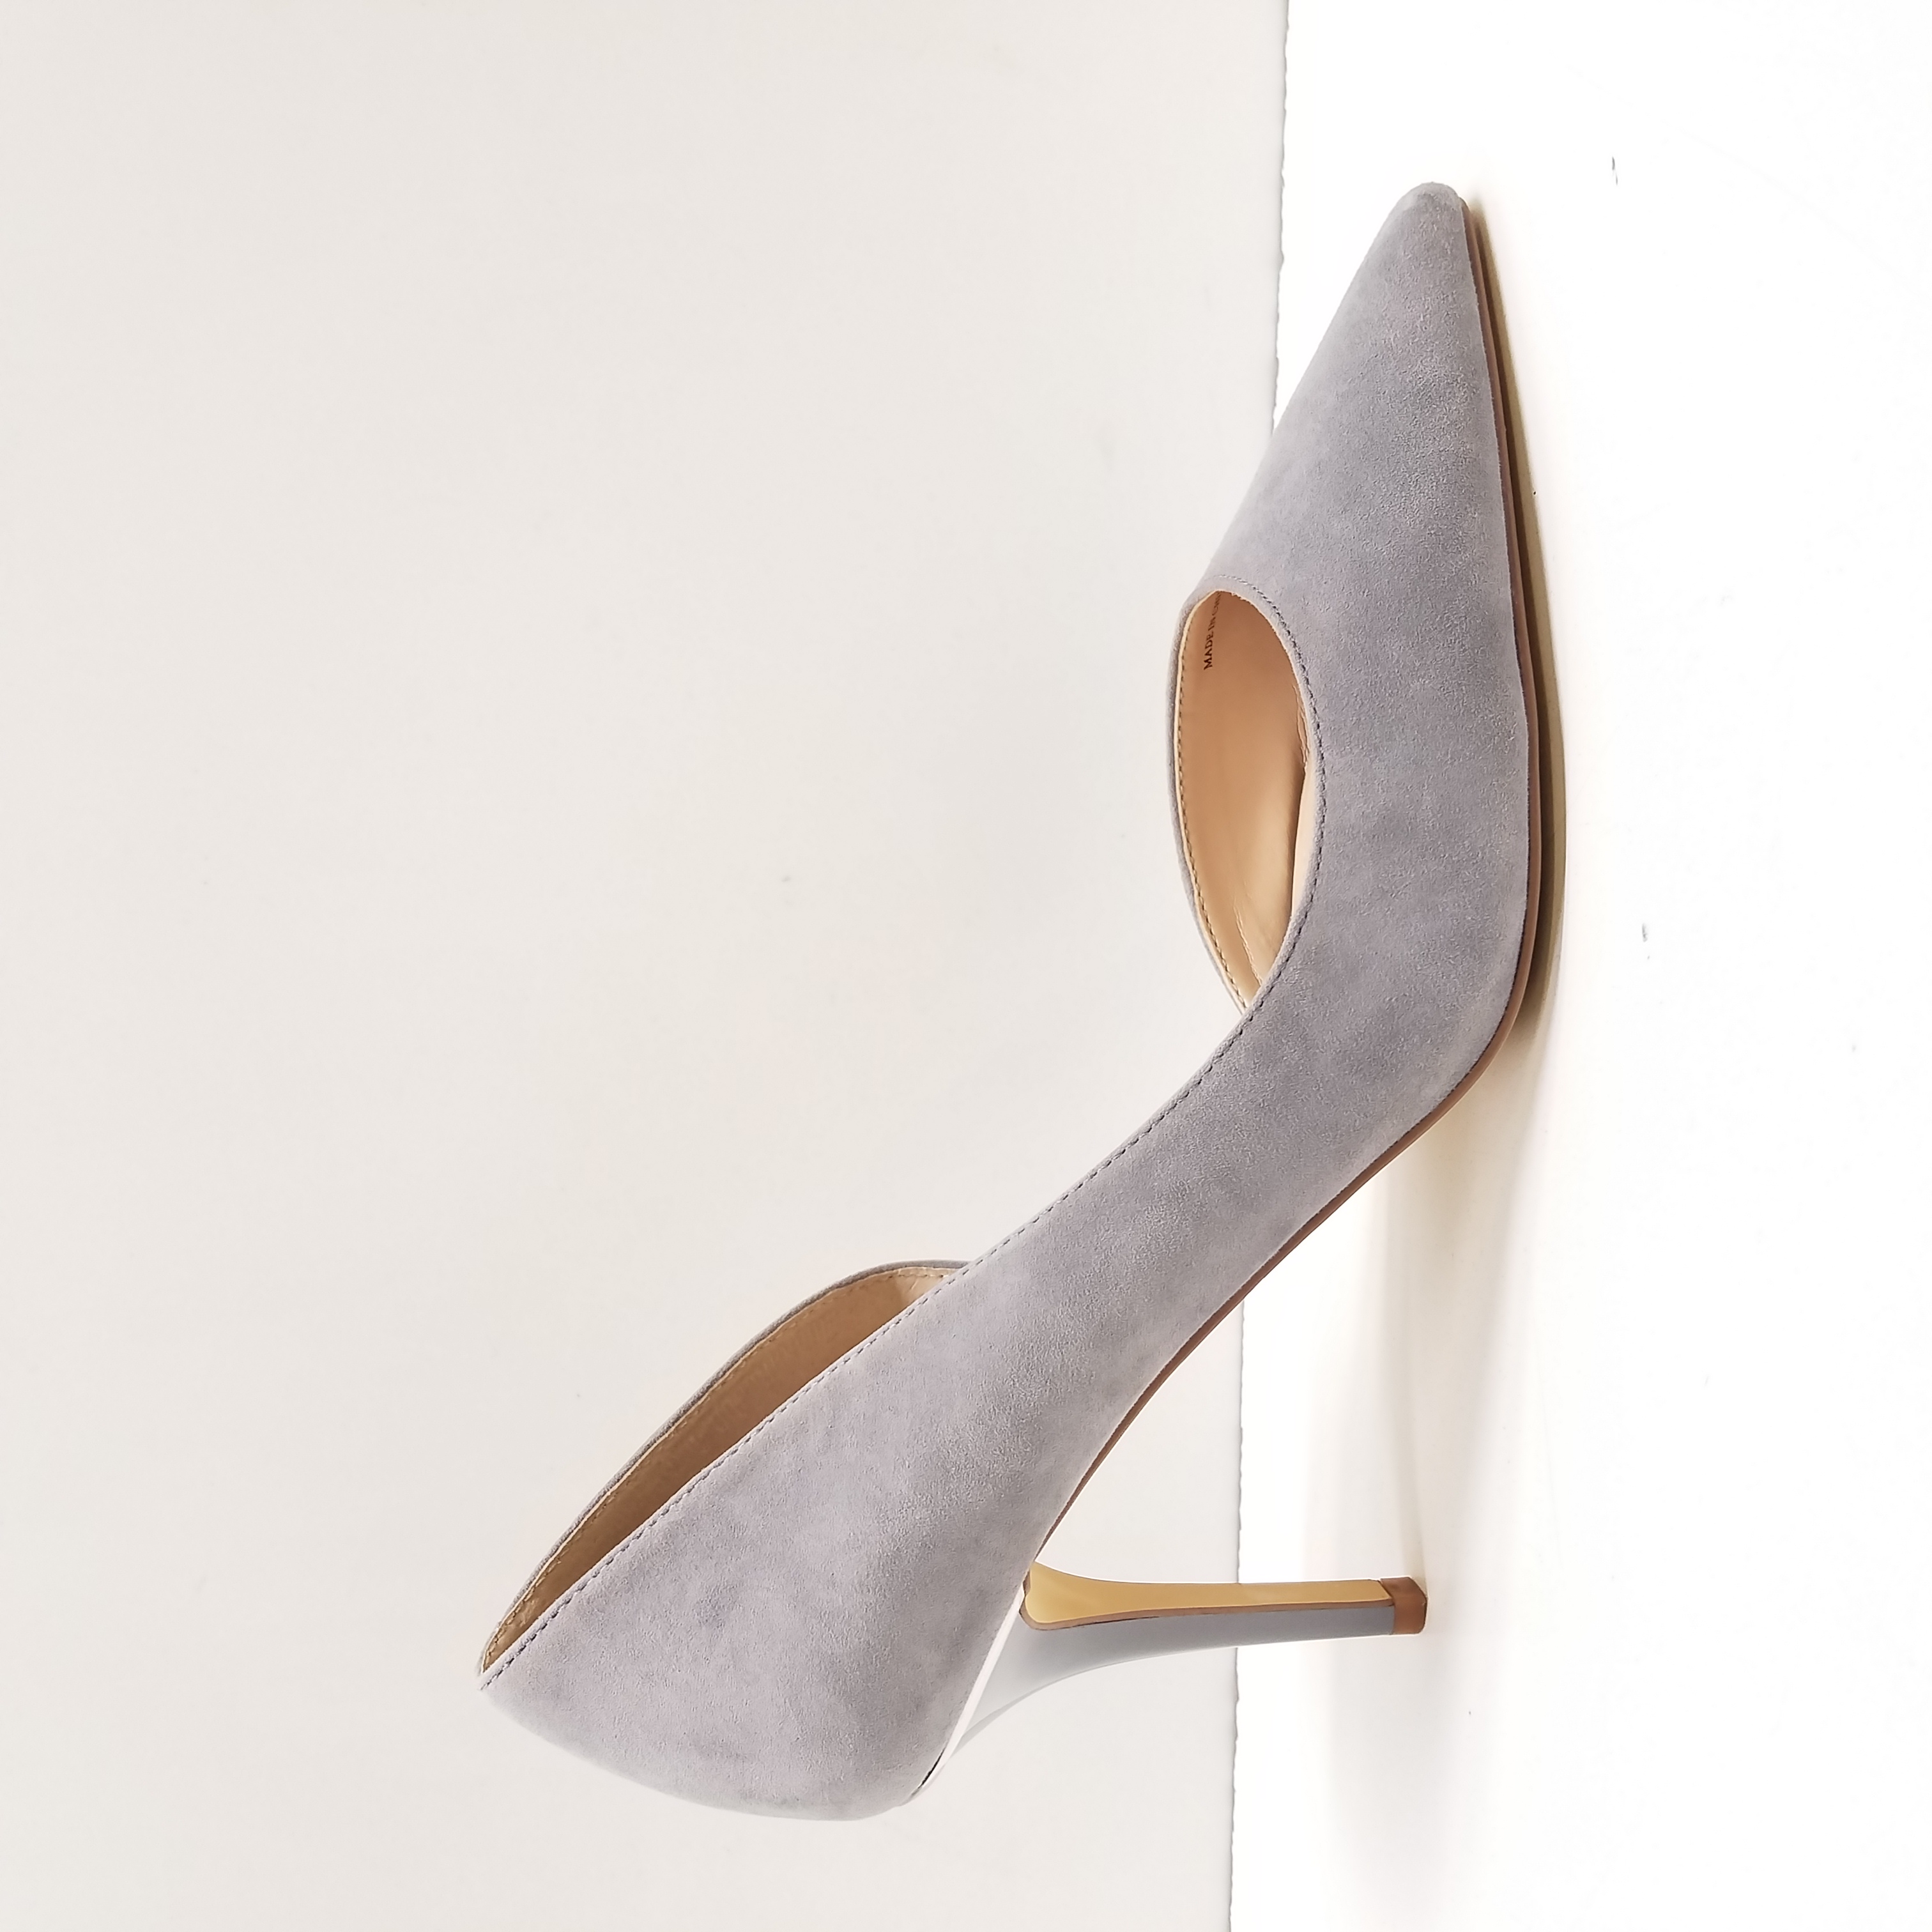 Claudia Ciuti | Shoes | Claudia Ciuti Firenze Womens Shoes Open Toe Suede  Size 6 M Grey Bowheels | Poshmark